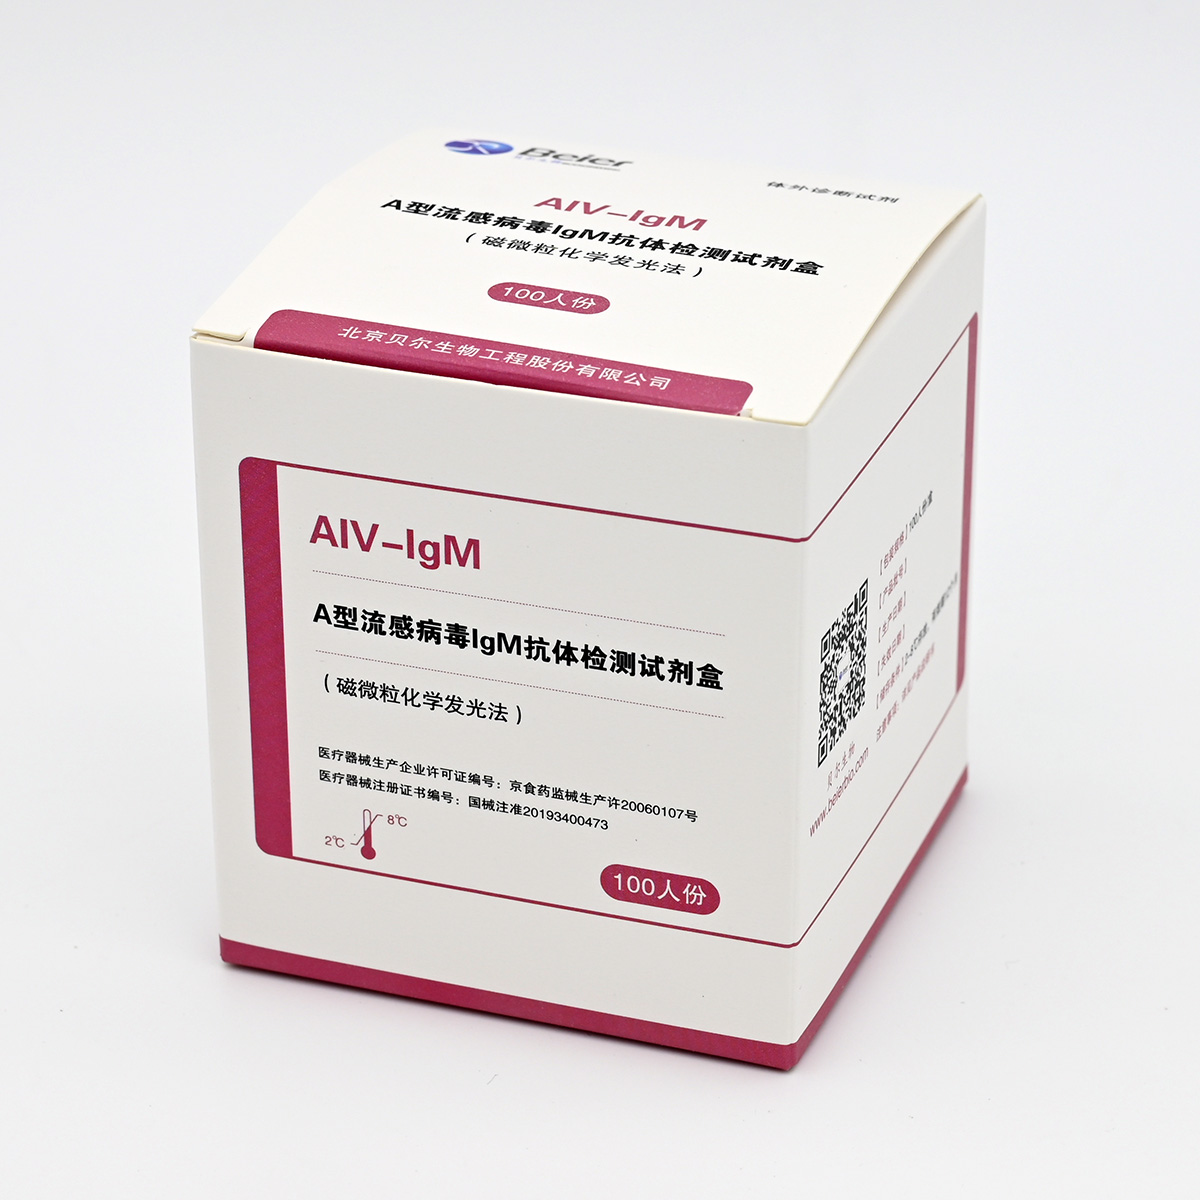 【贝尔】A型流感病毒IgM抗体检测试剂盒(磁微粒化学发光法)